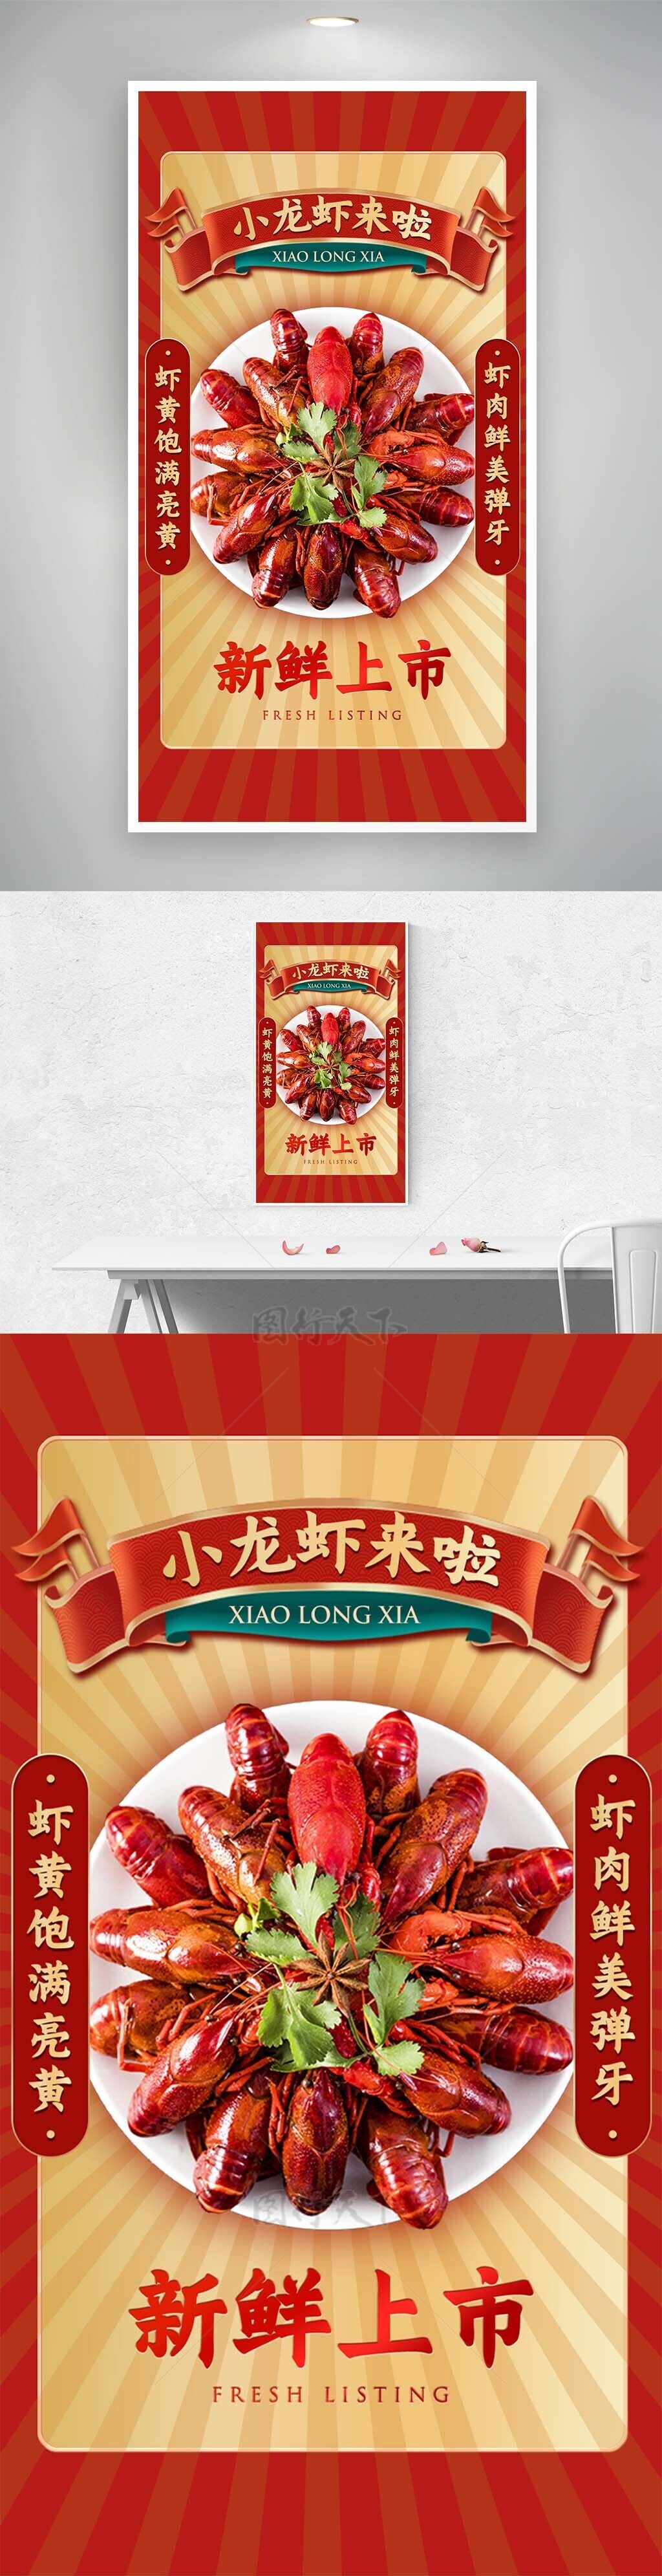 小龙虾新鲜上市创意红色菜系海报